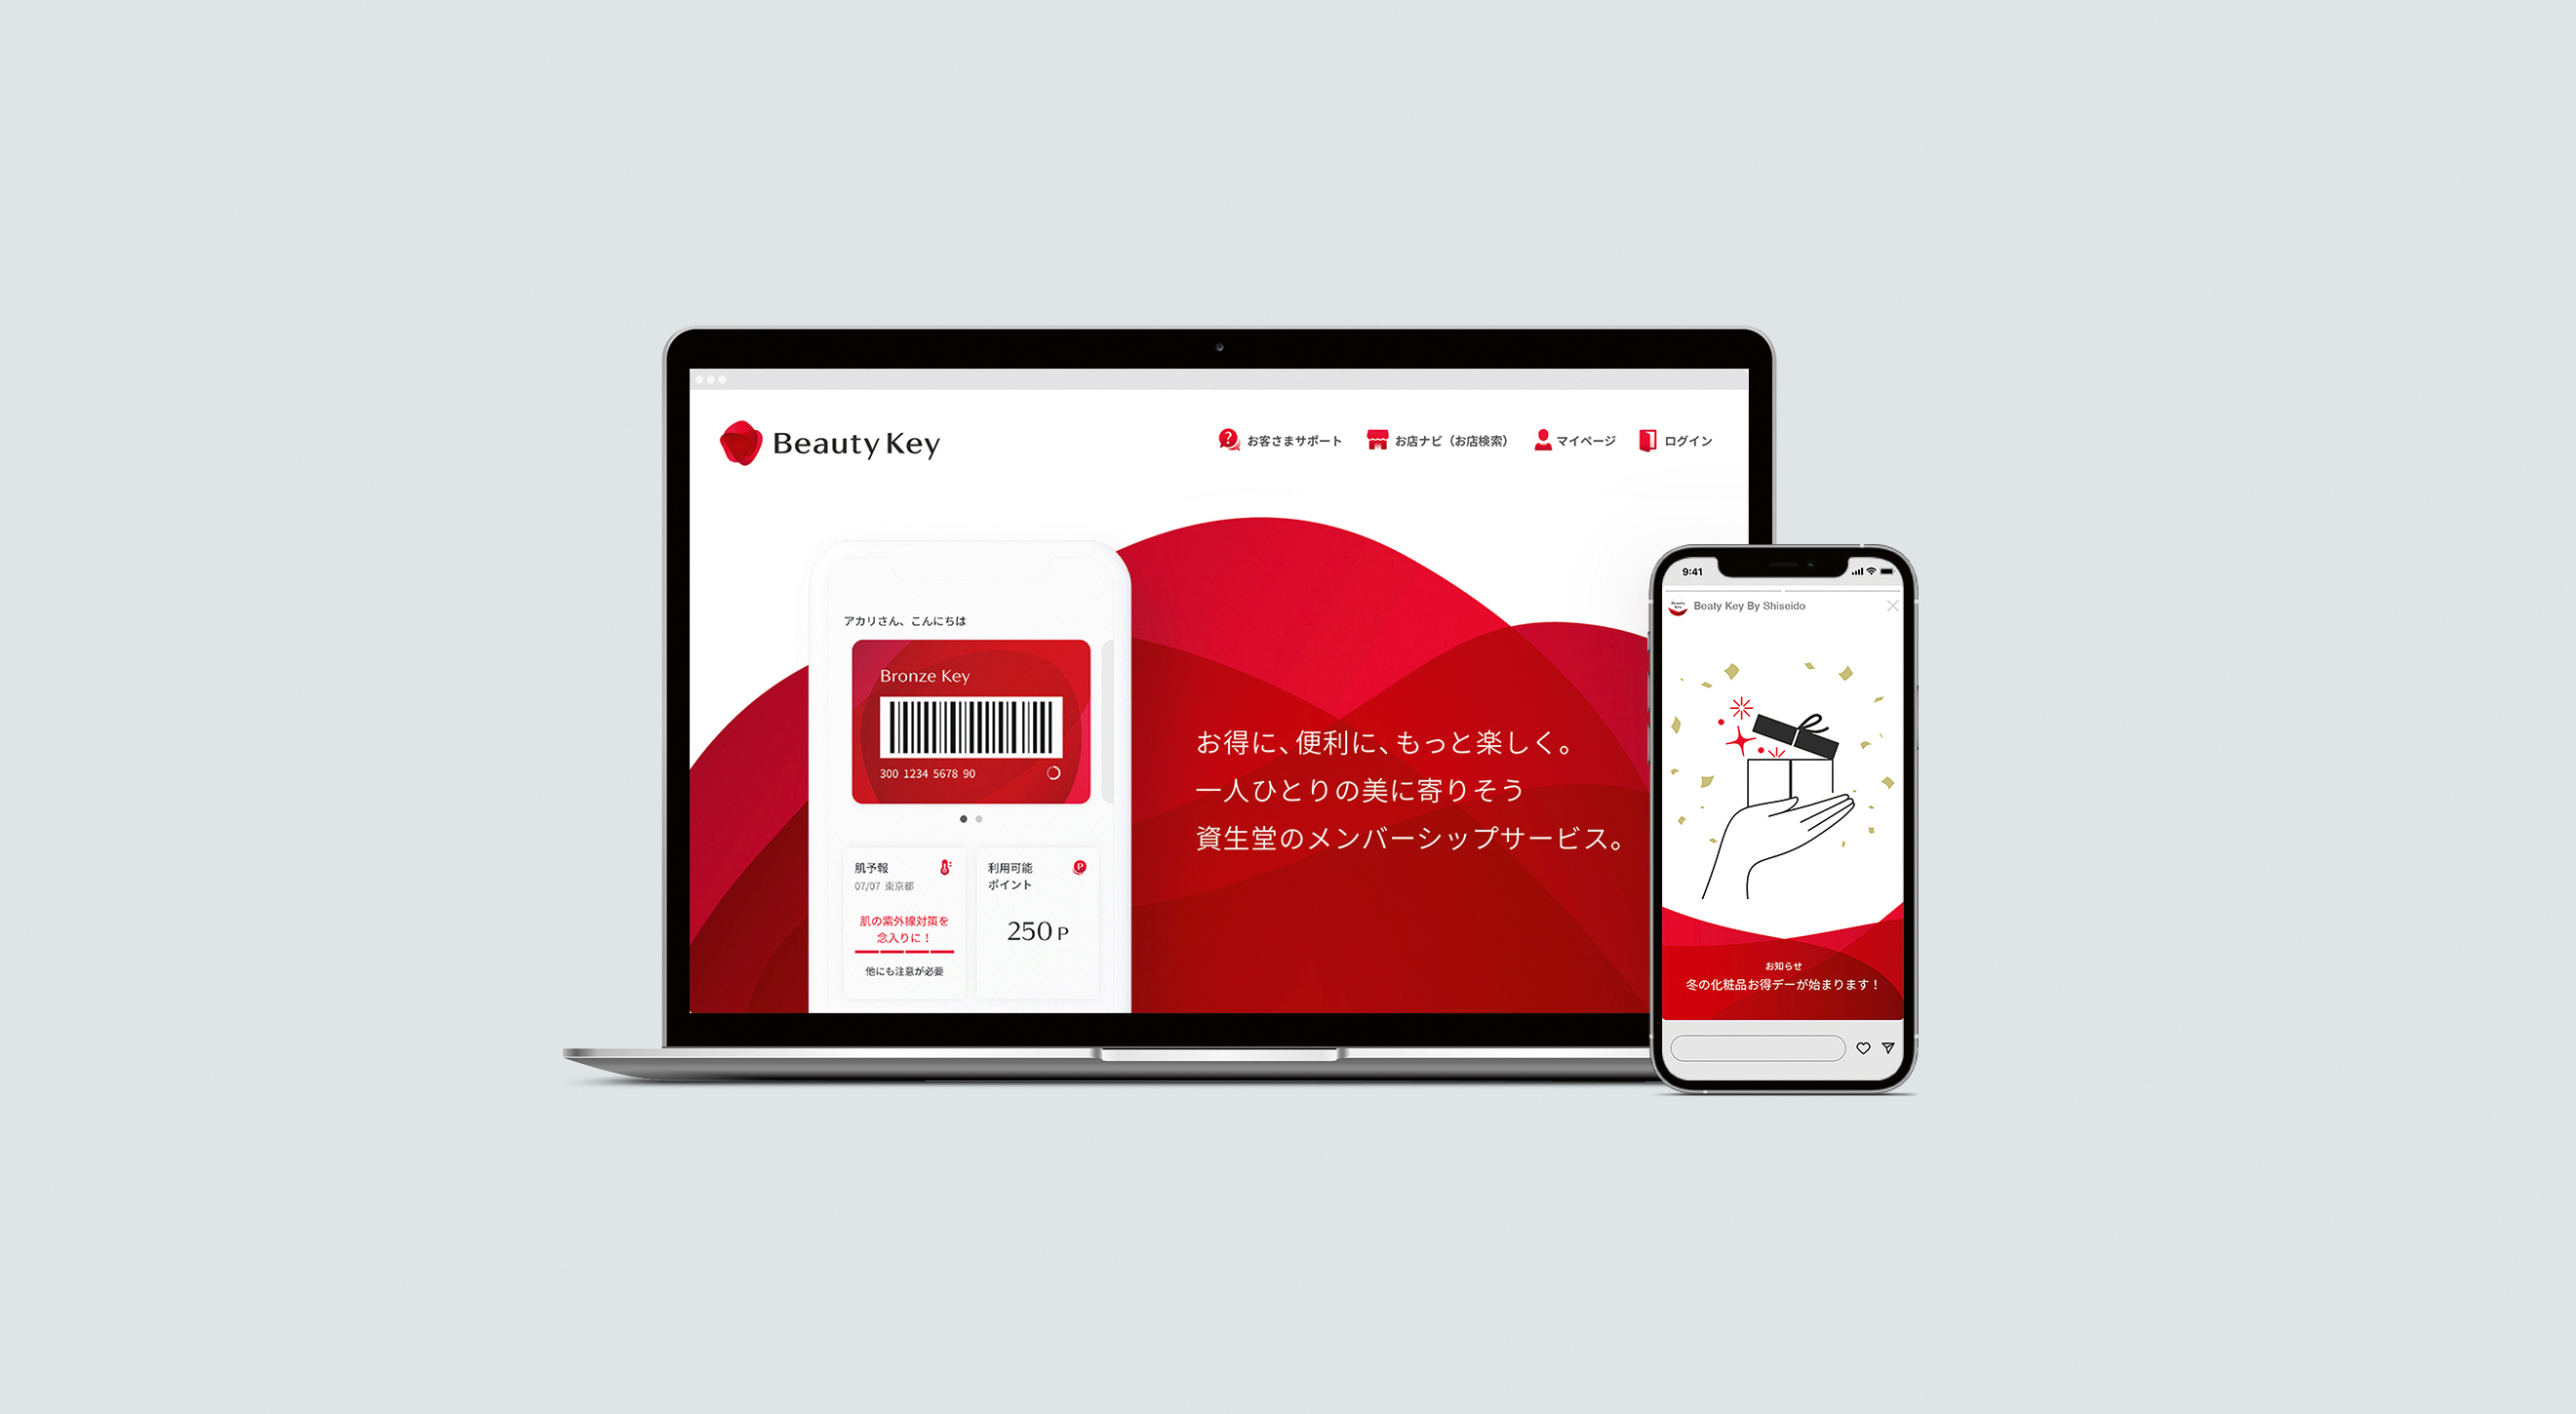 Beauty Key by Shiseido – Membership Programme App